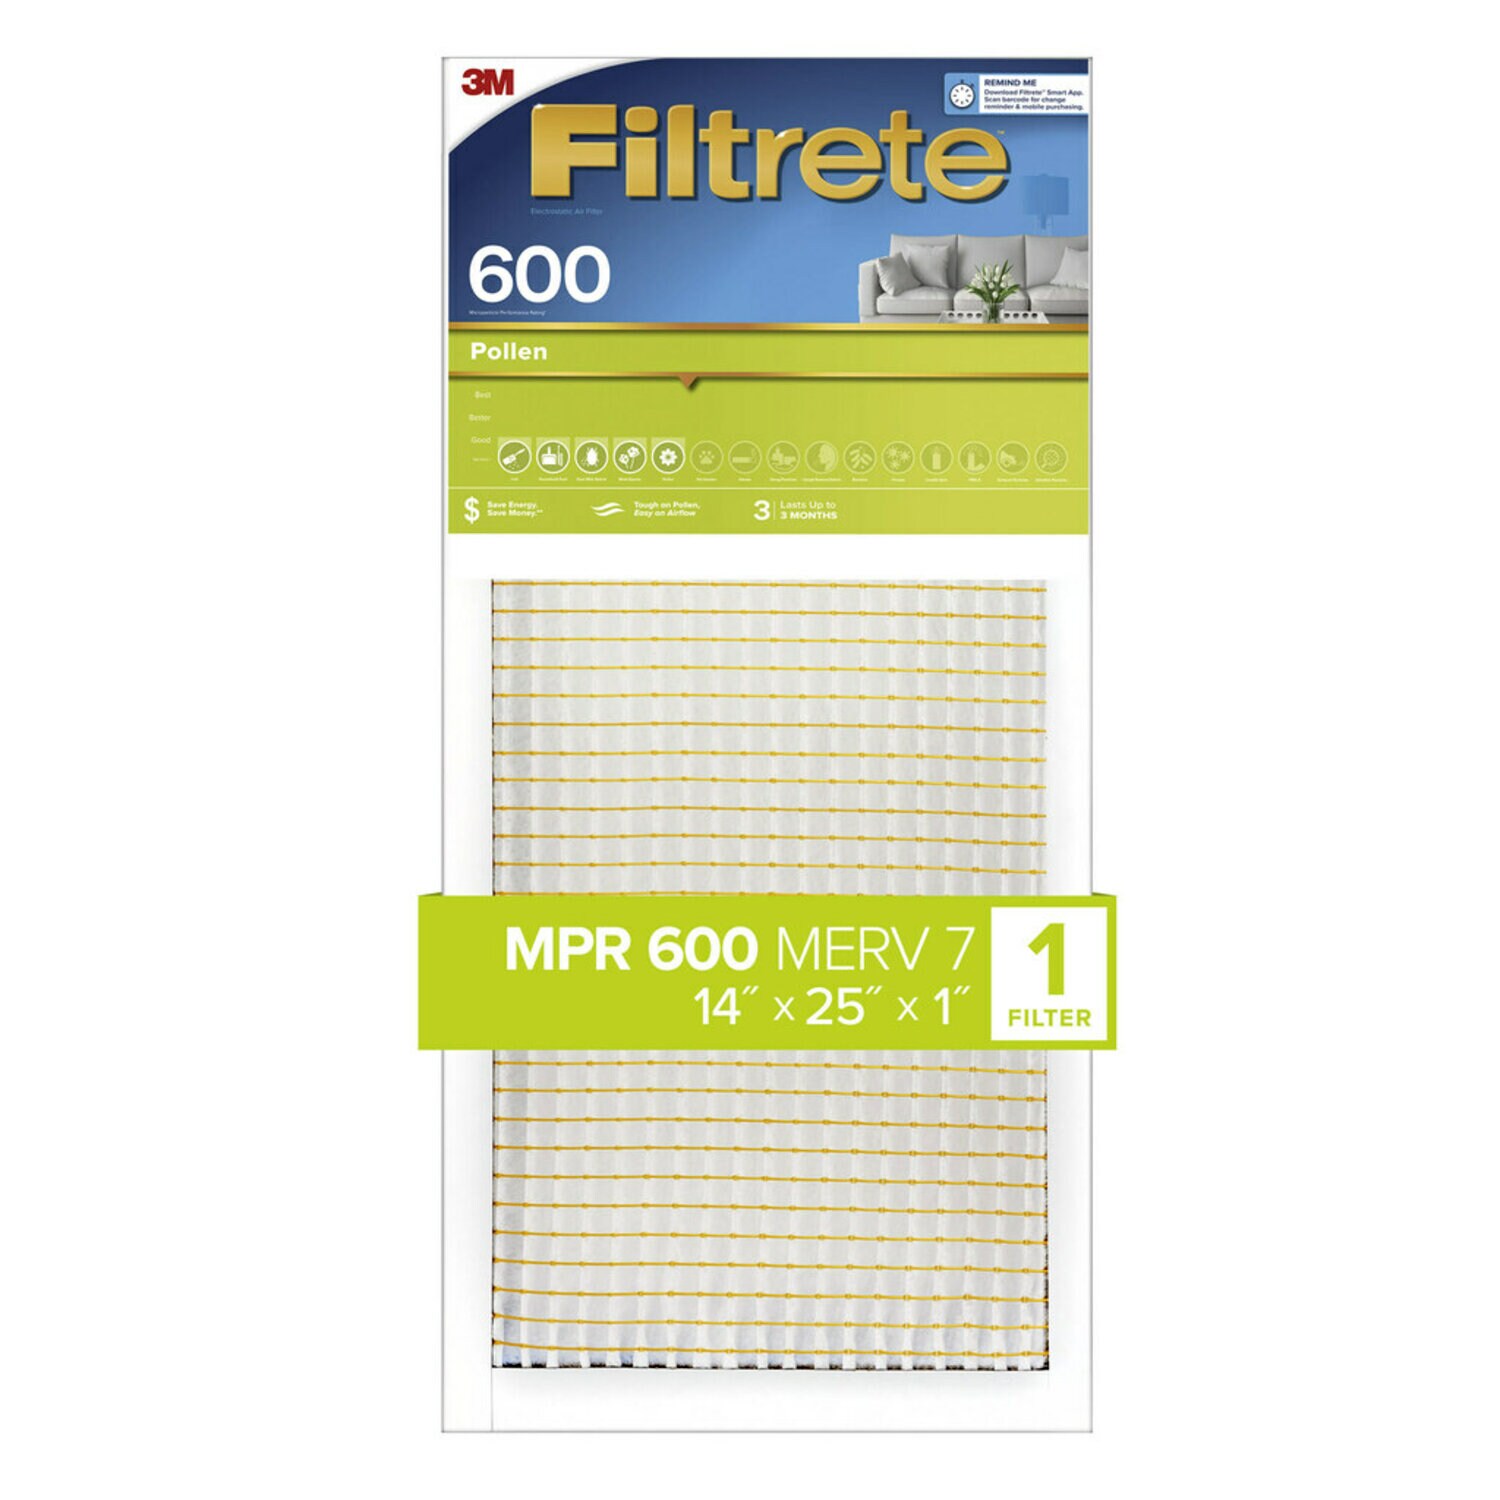 7100189227 - Filtrete Pollen Air Filter, 600 MPR, 9834-4, 14 in x 25 in x 1 in (35,5
cm x 63,5 cm x 2,5 cm)